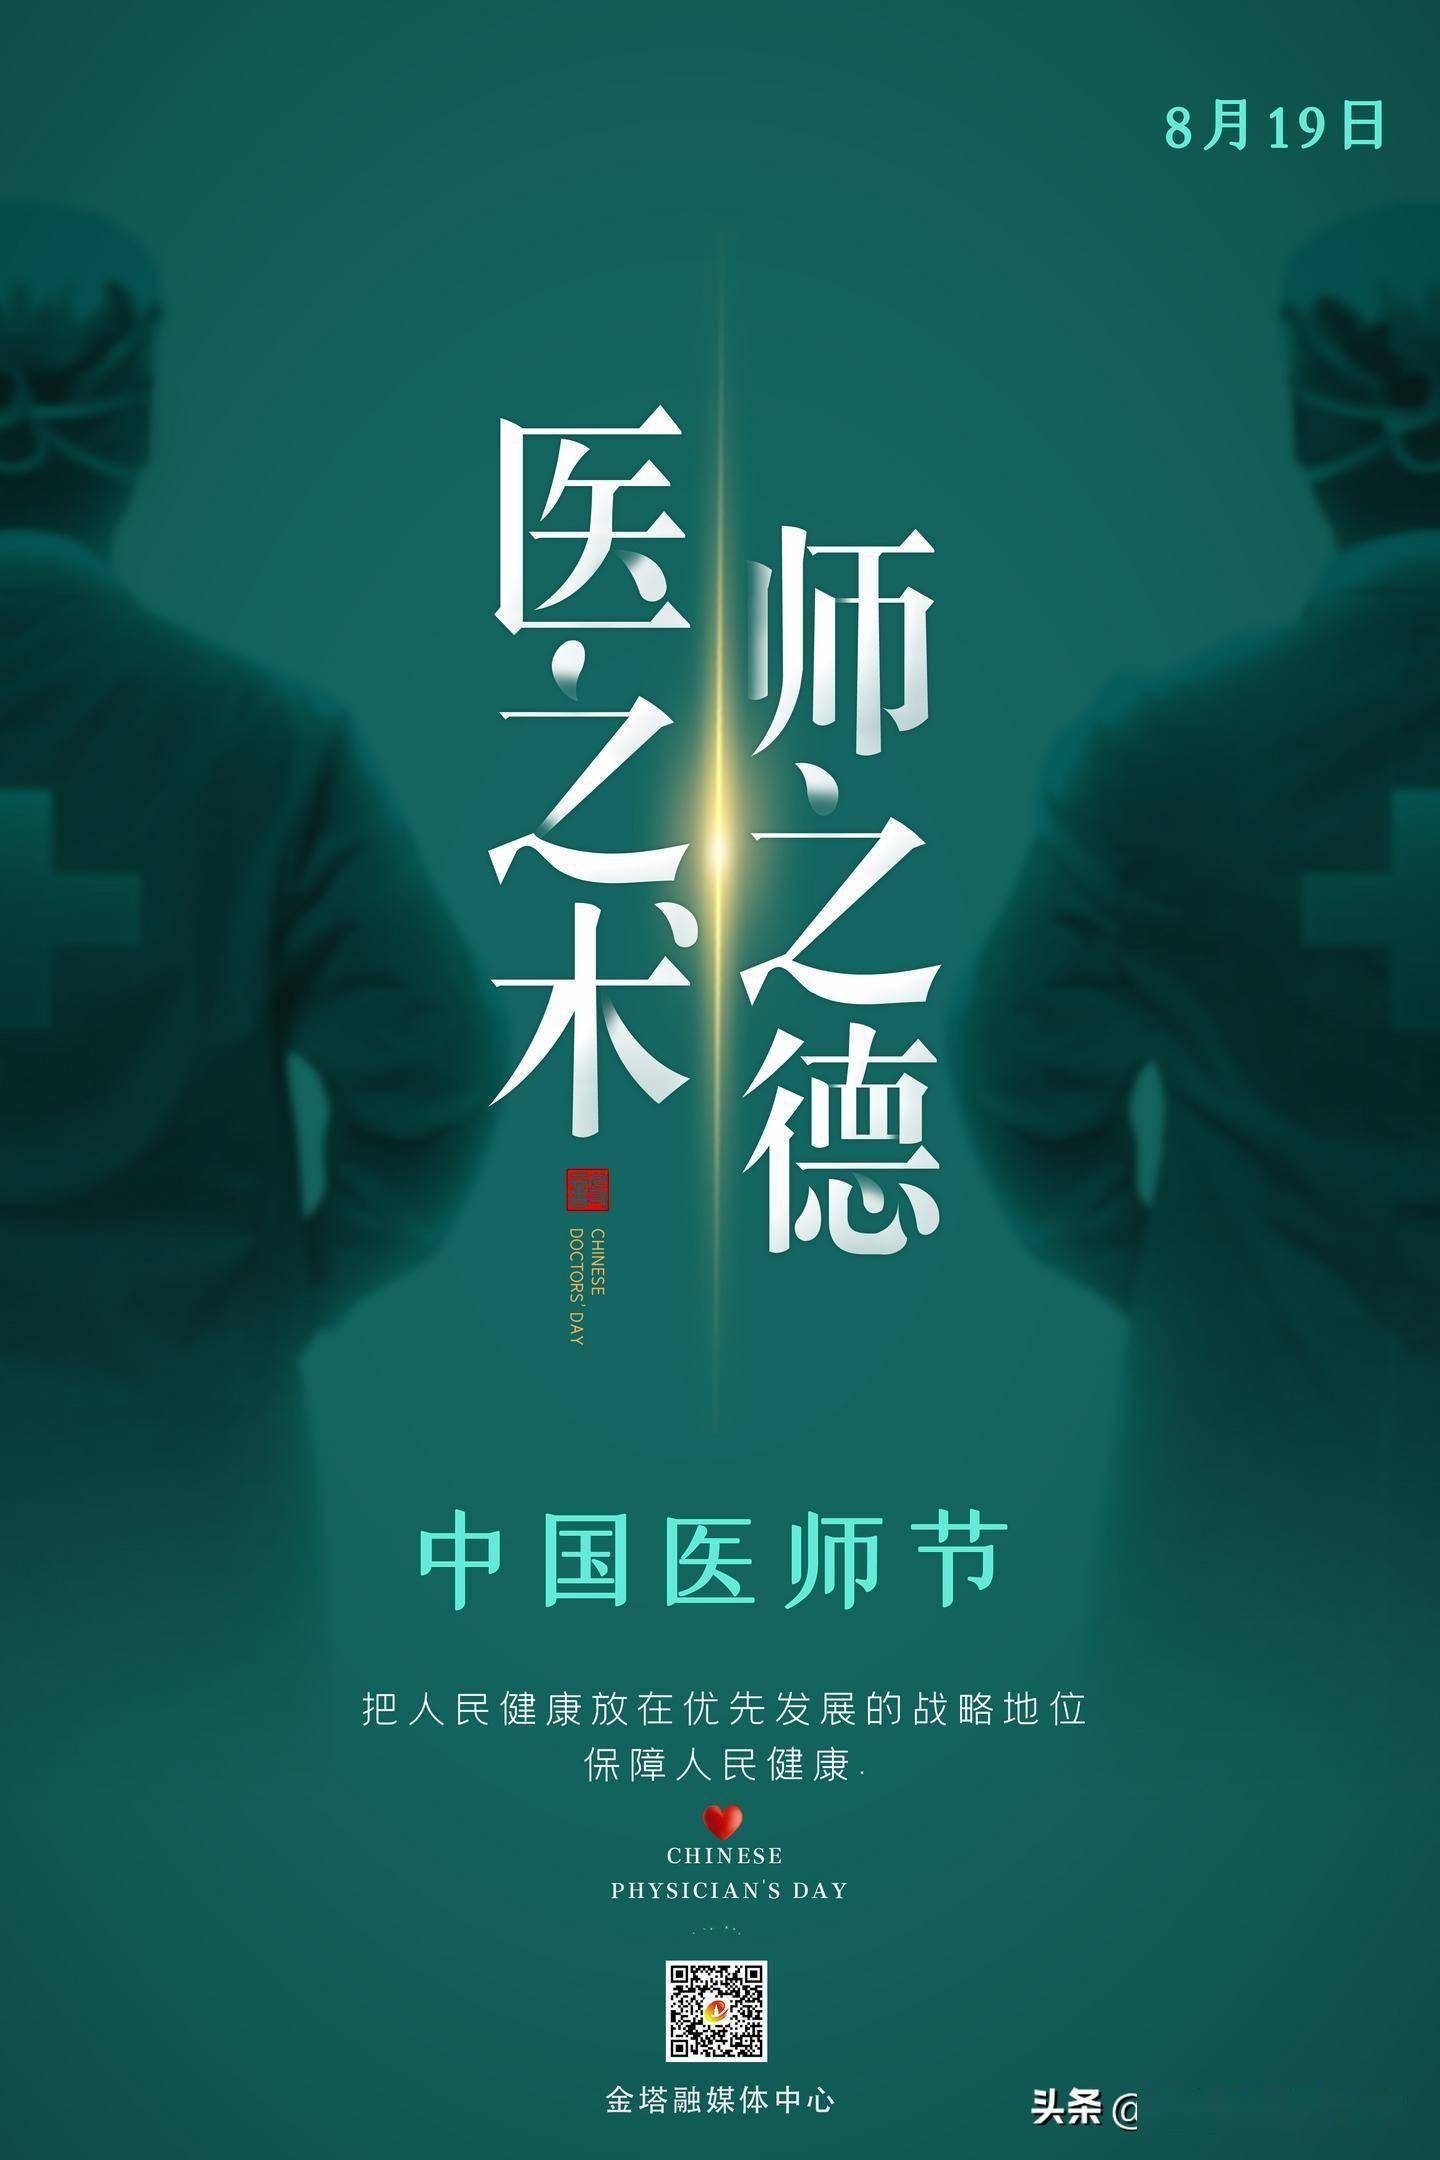 「微海报」中国医师节,向所有医生致敬